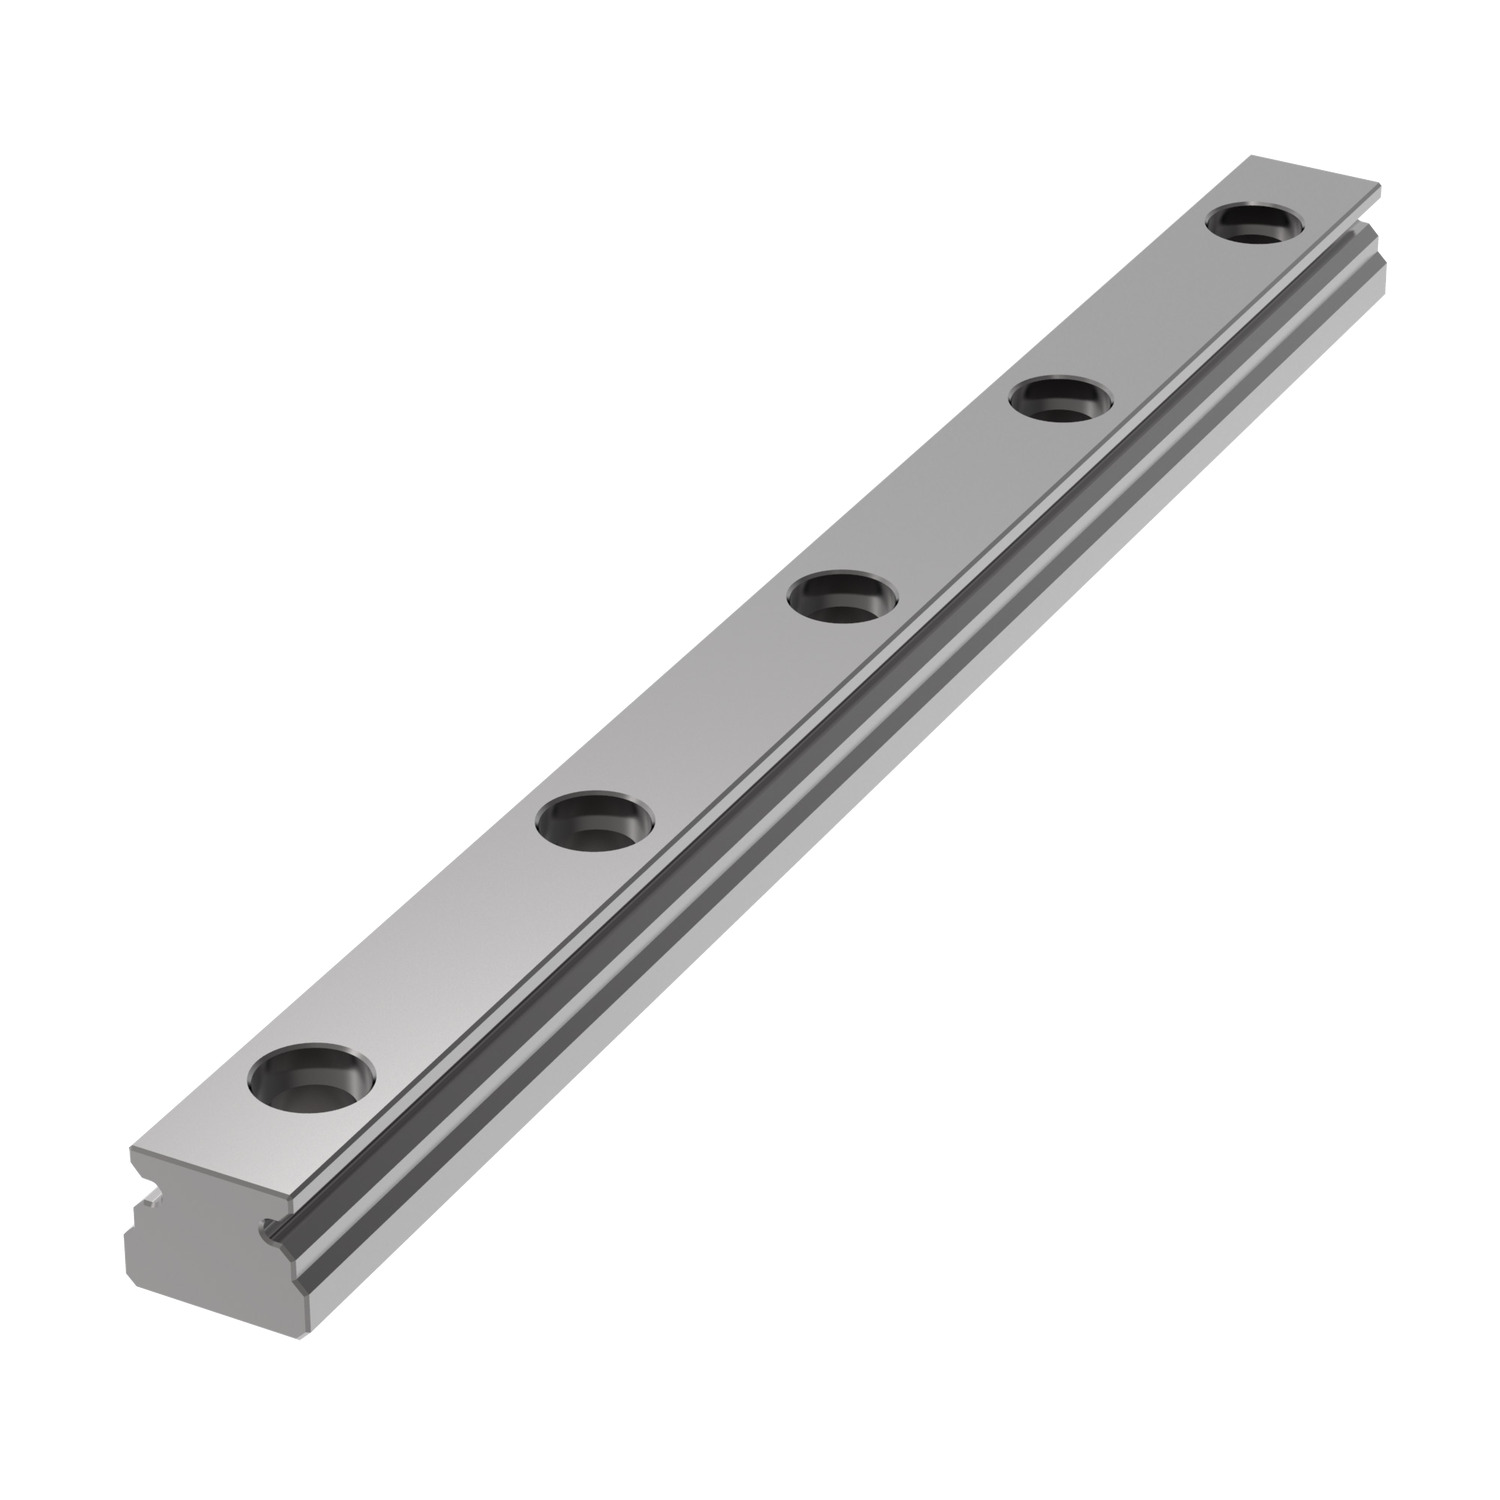 L1010.15 15mm Miniature Linear Rail